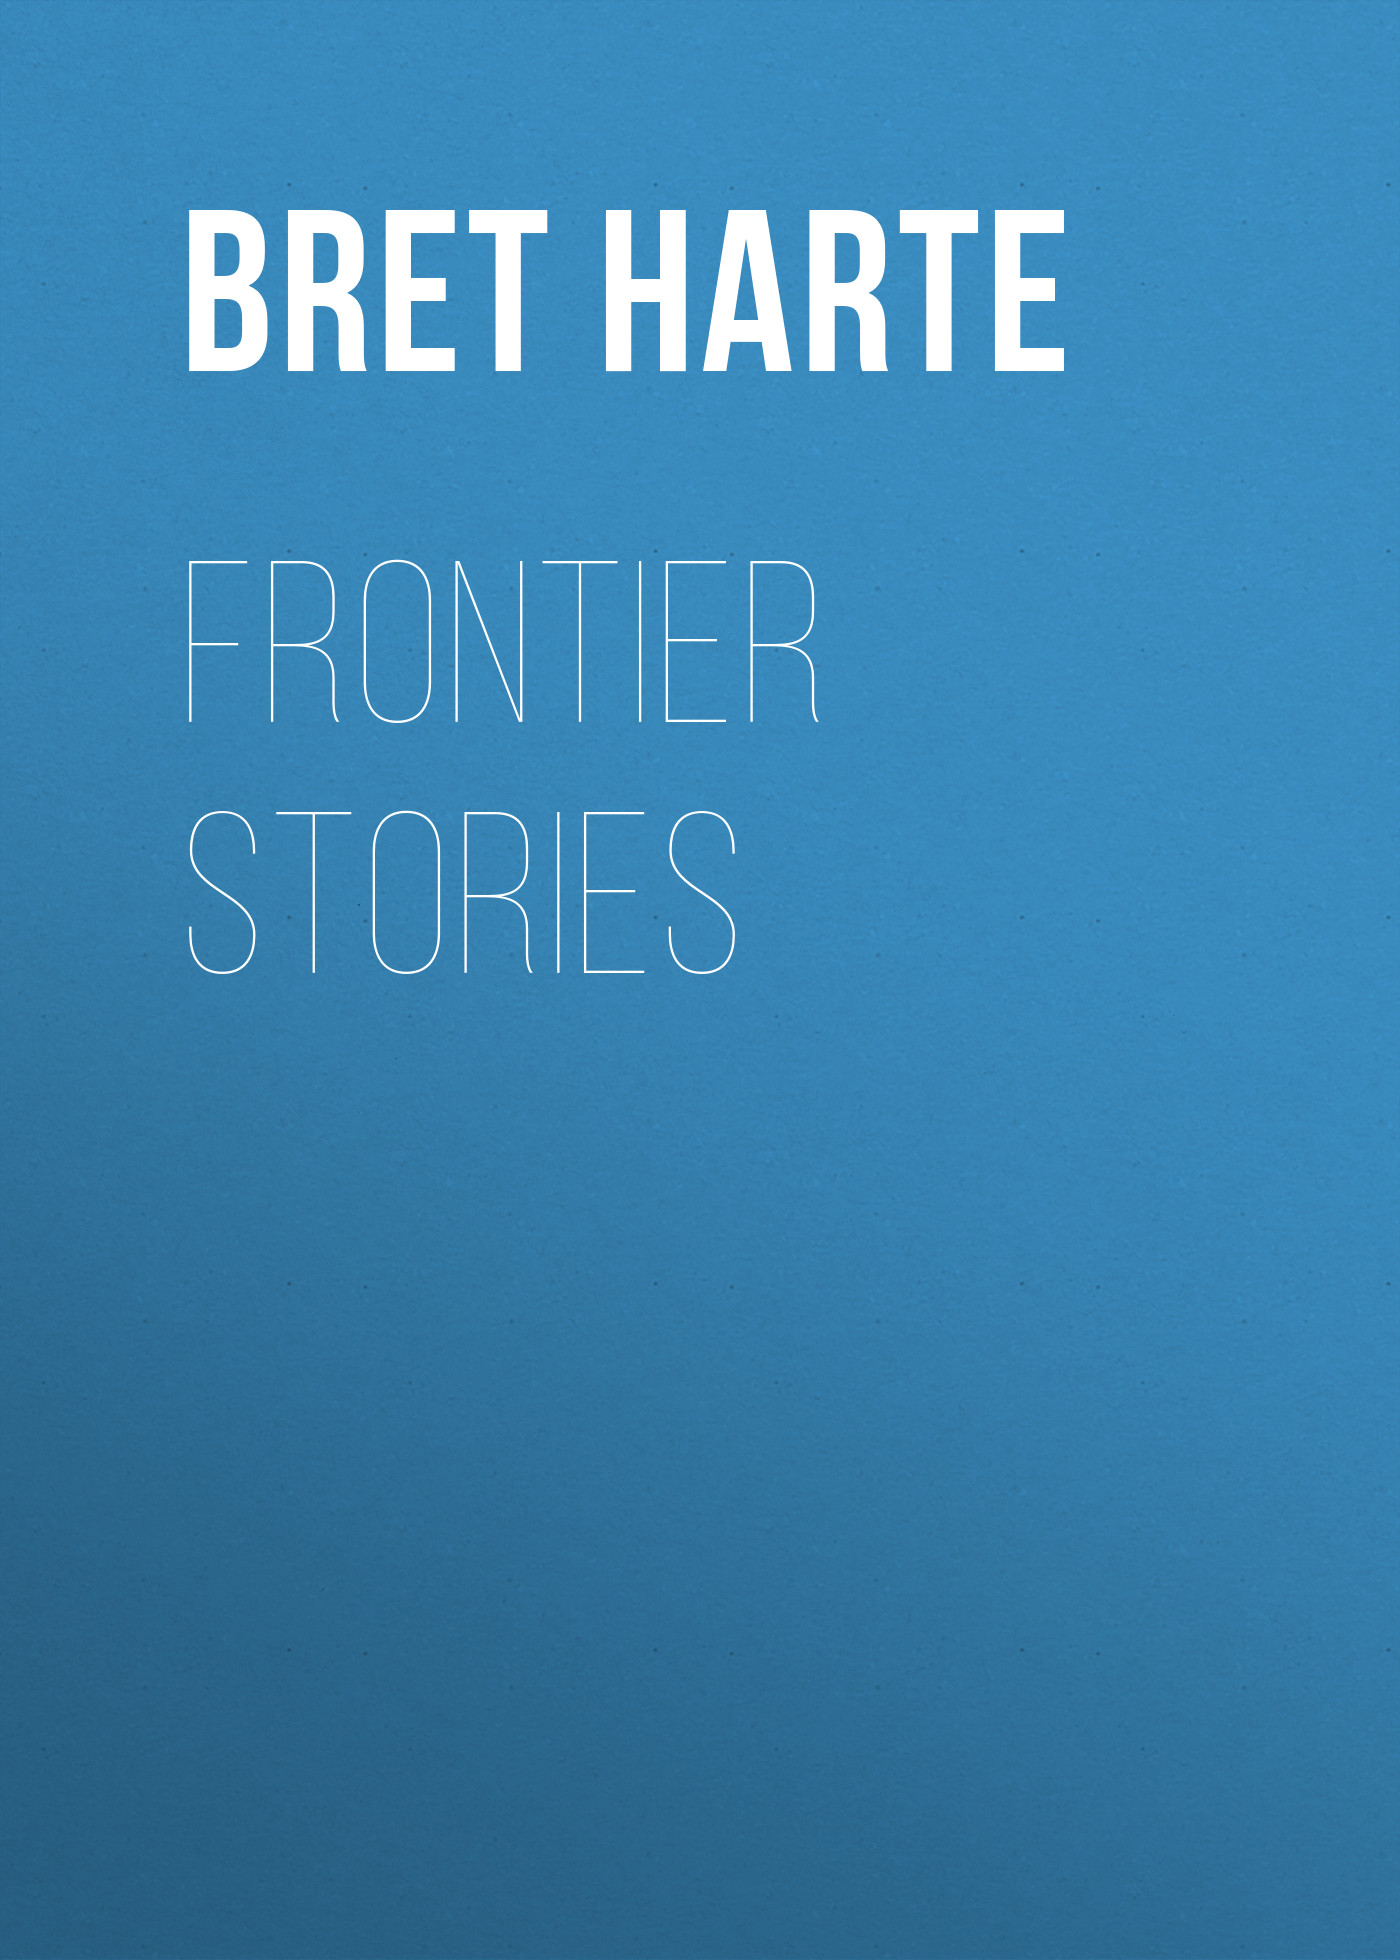 Книга Frontier Stories из серии , созданная Bret Harte, может относится к жанру Зарубежная фантастика, Литература 19 века, Зарубежная старинная литература, Зарубежная классика. Стоимость электронной книги Frontier Stories с идентификатором 36323724 составляет 0 руб.